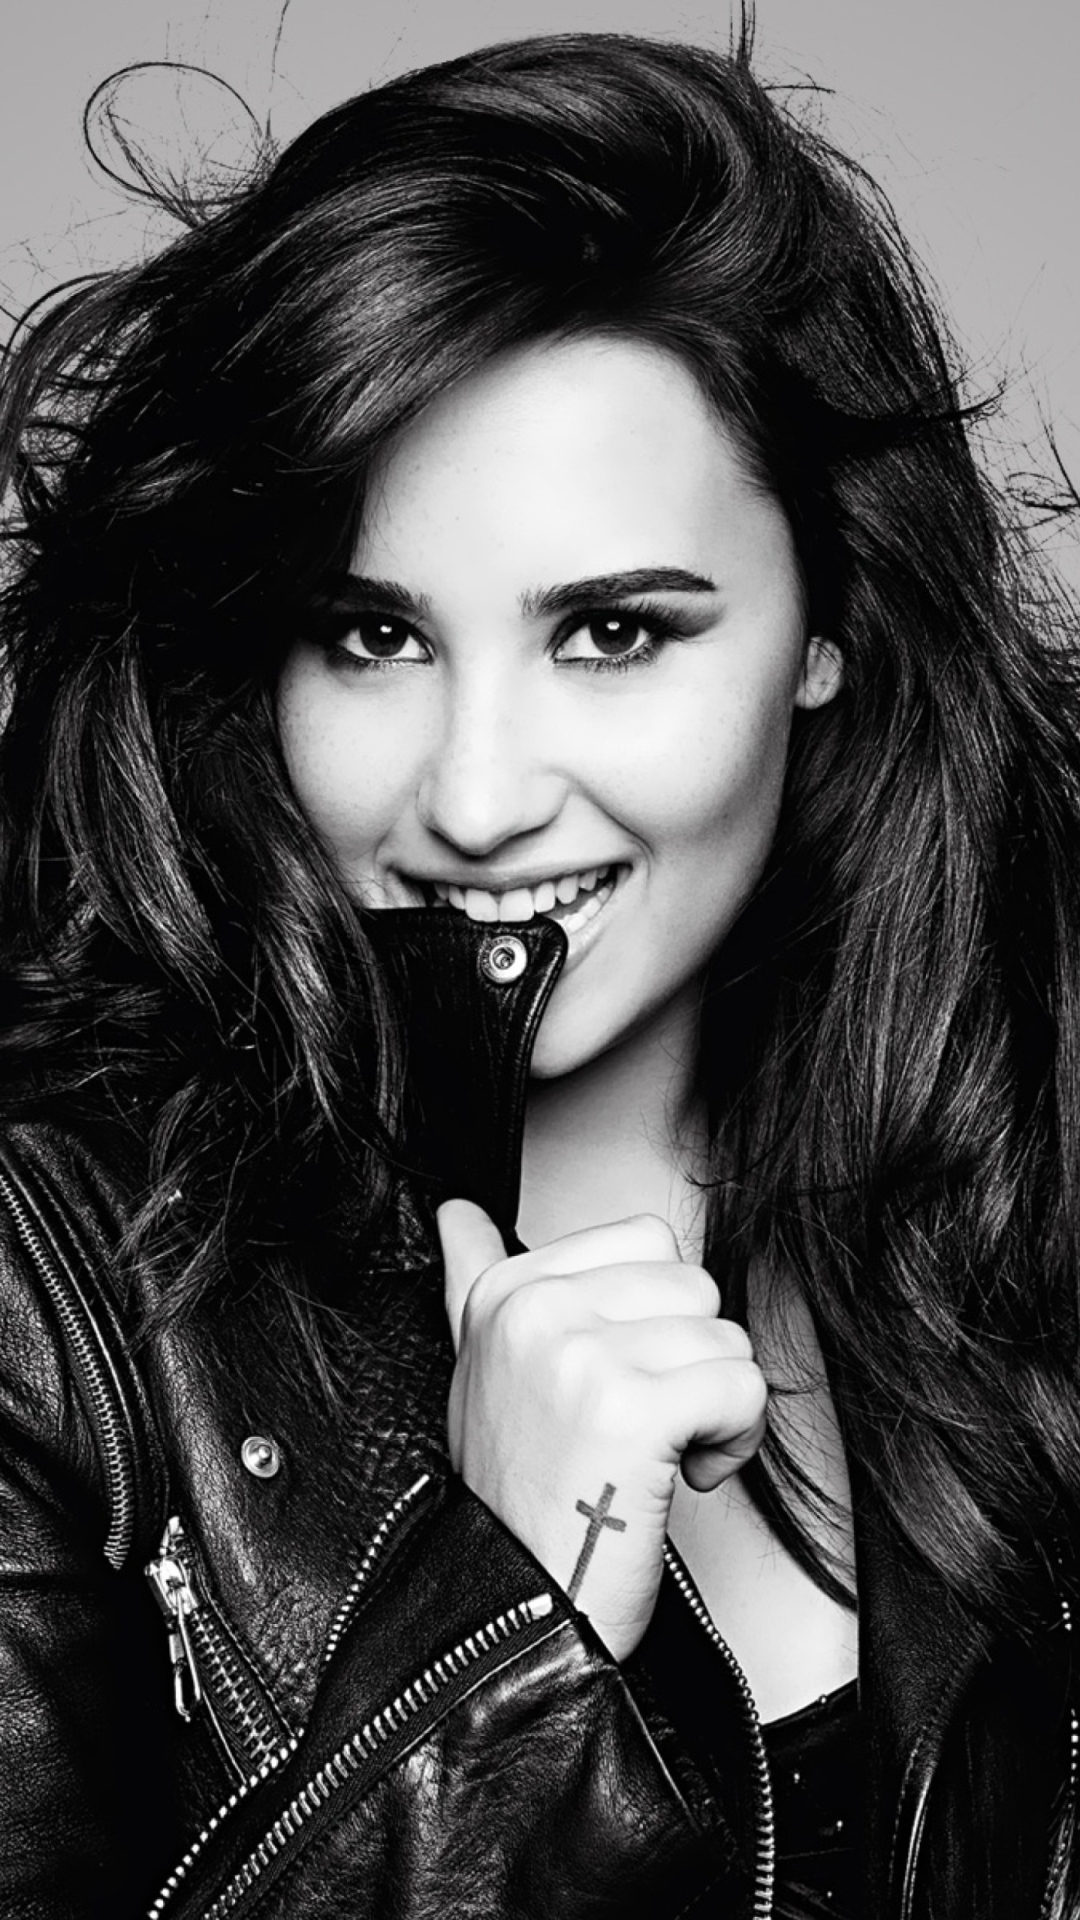 Das Demi Lovato Girlfriend 2013 Wallpaper 1080x1920